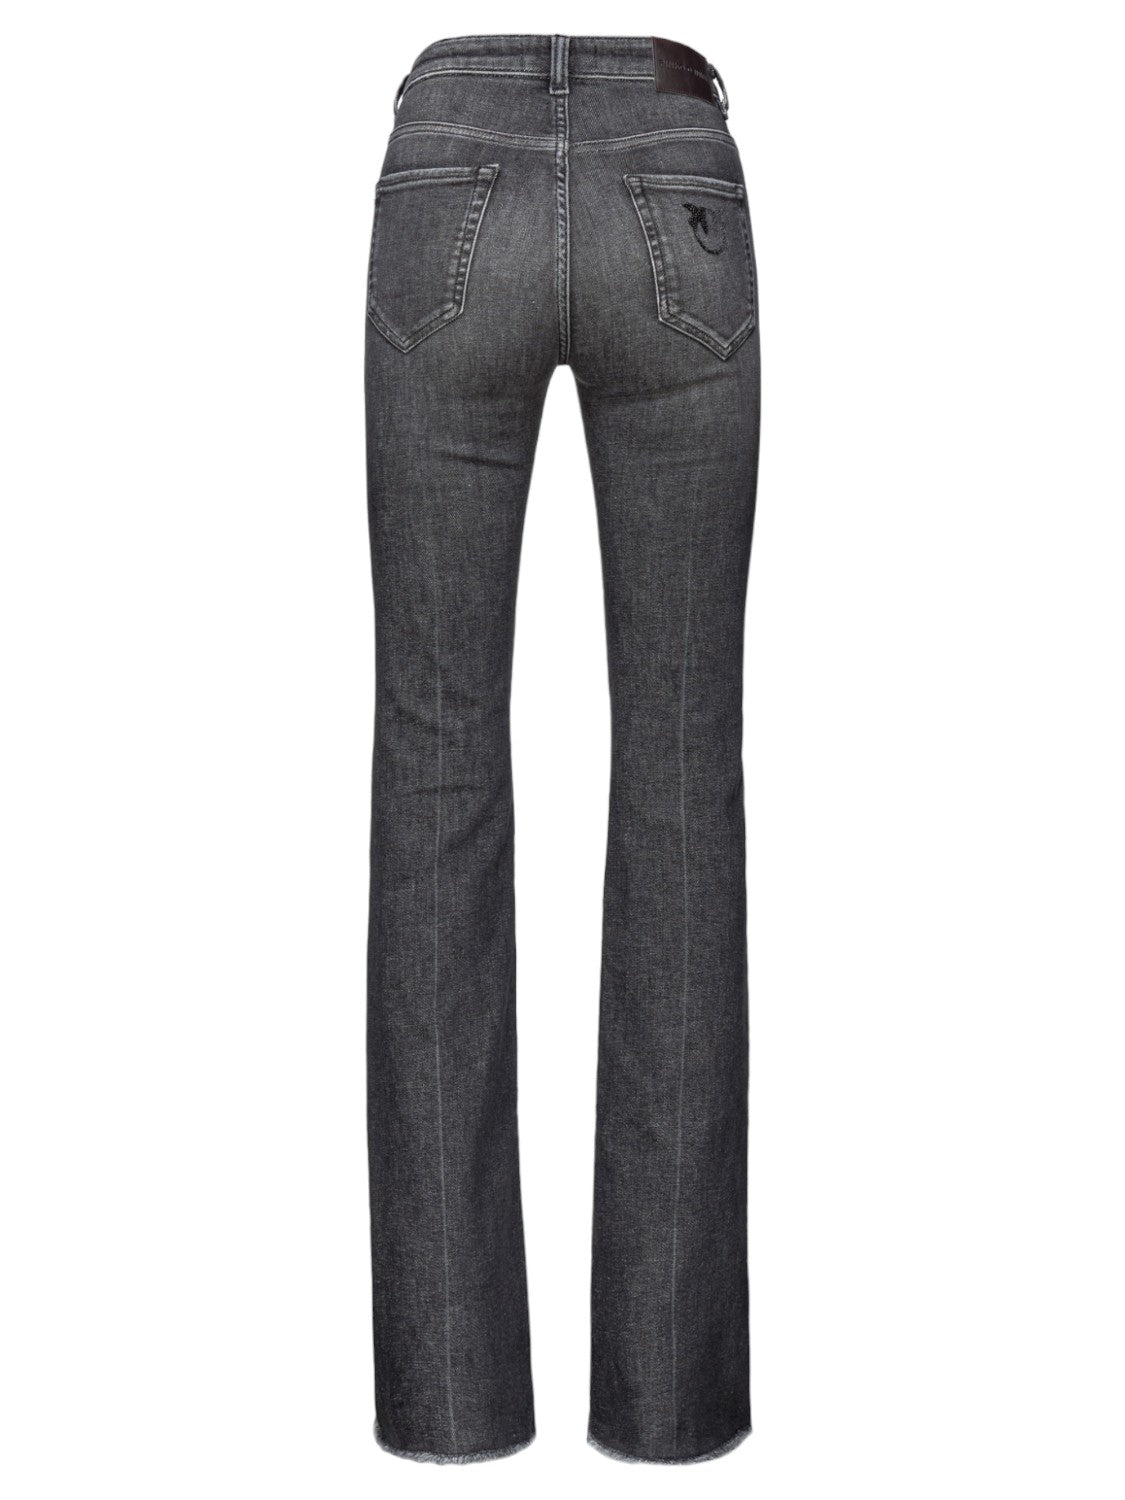 Jeans Flora Flare-Fit in Denim Vintage Grigio-Pinko-Jeans-Vittorio Citro Boutique